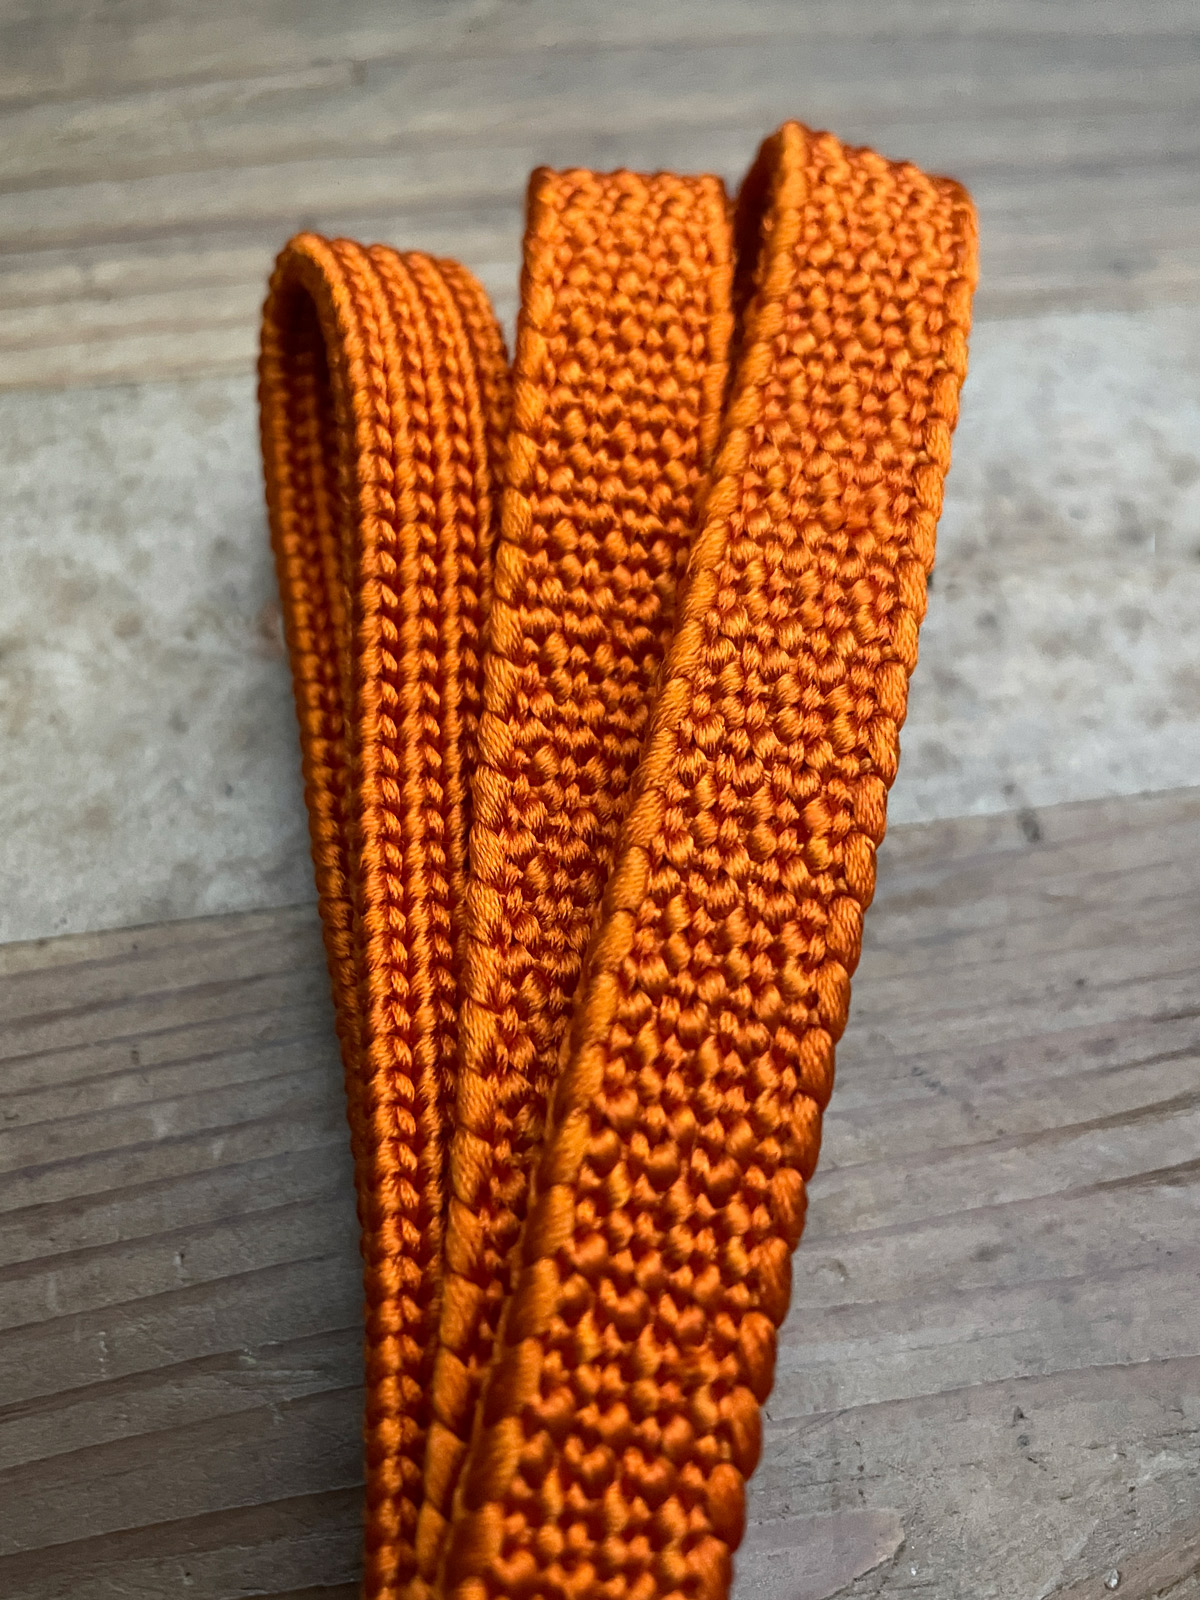 Silk Obijime cord in dark orange